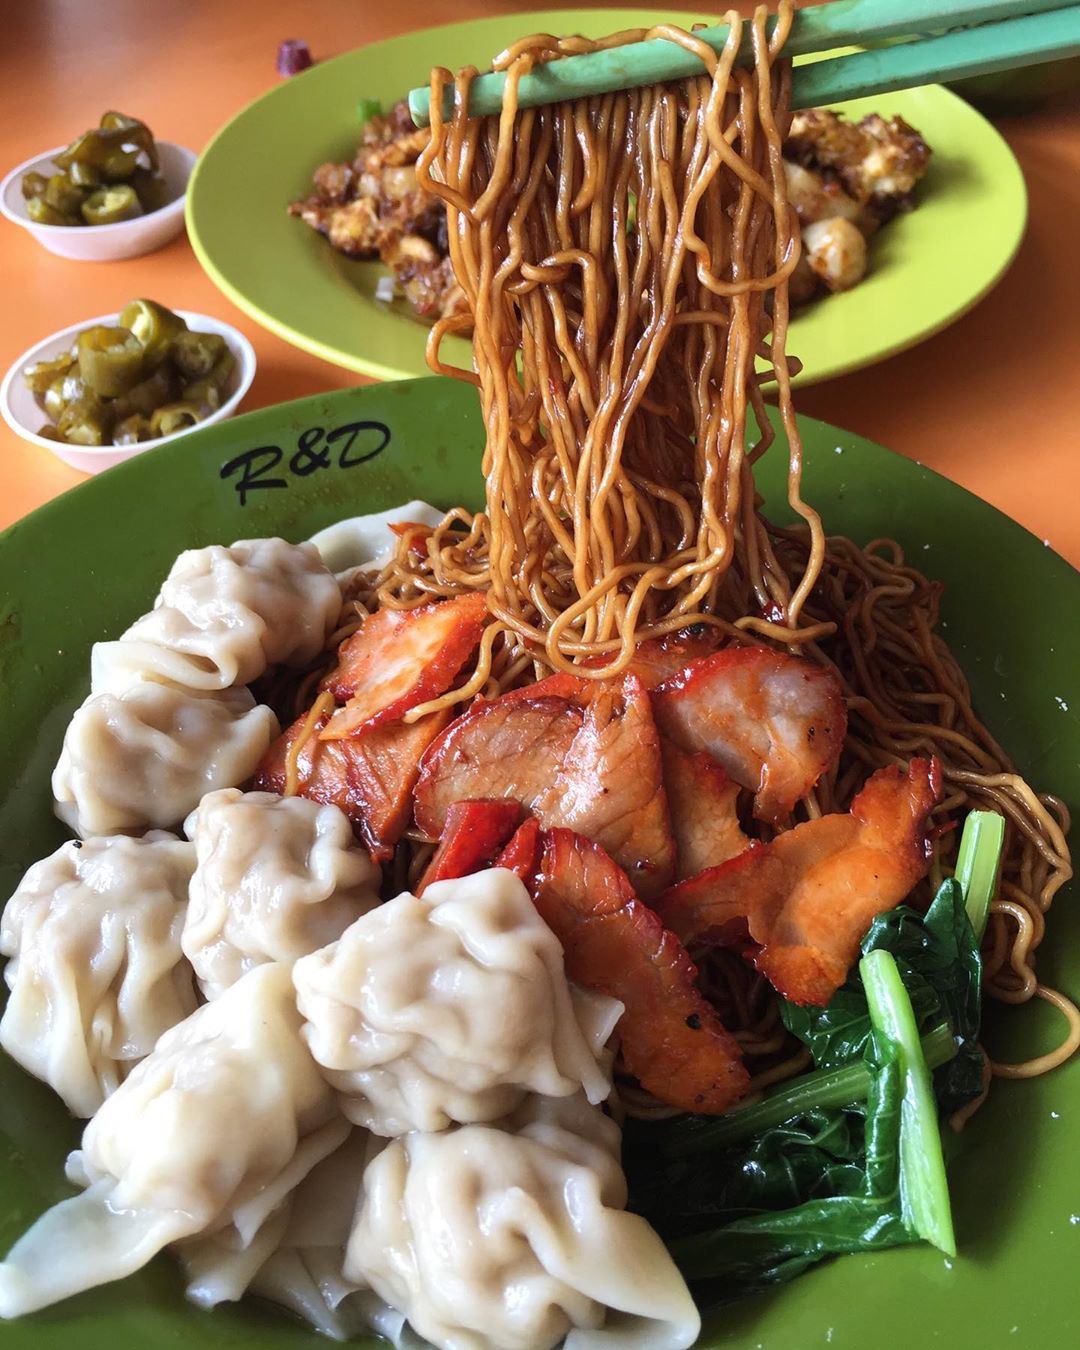 Bukit Merah View Market - R&D Wanton Noodles